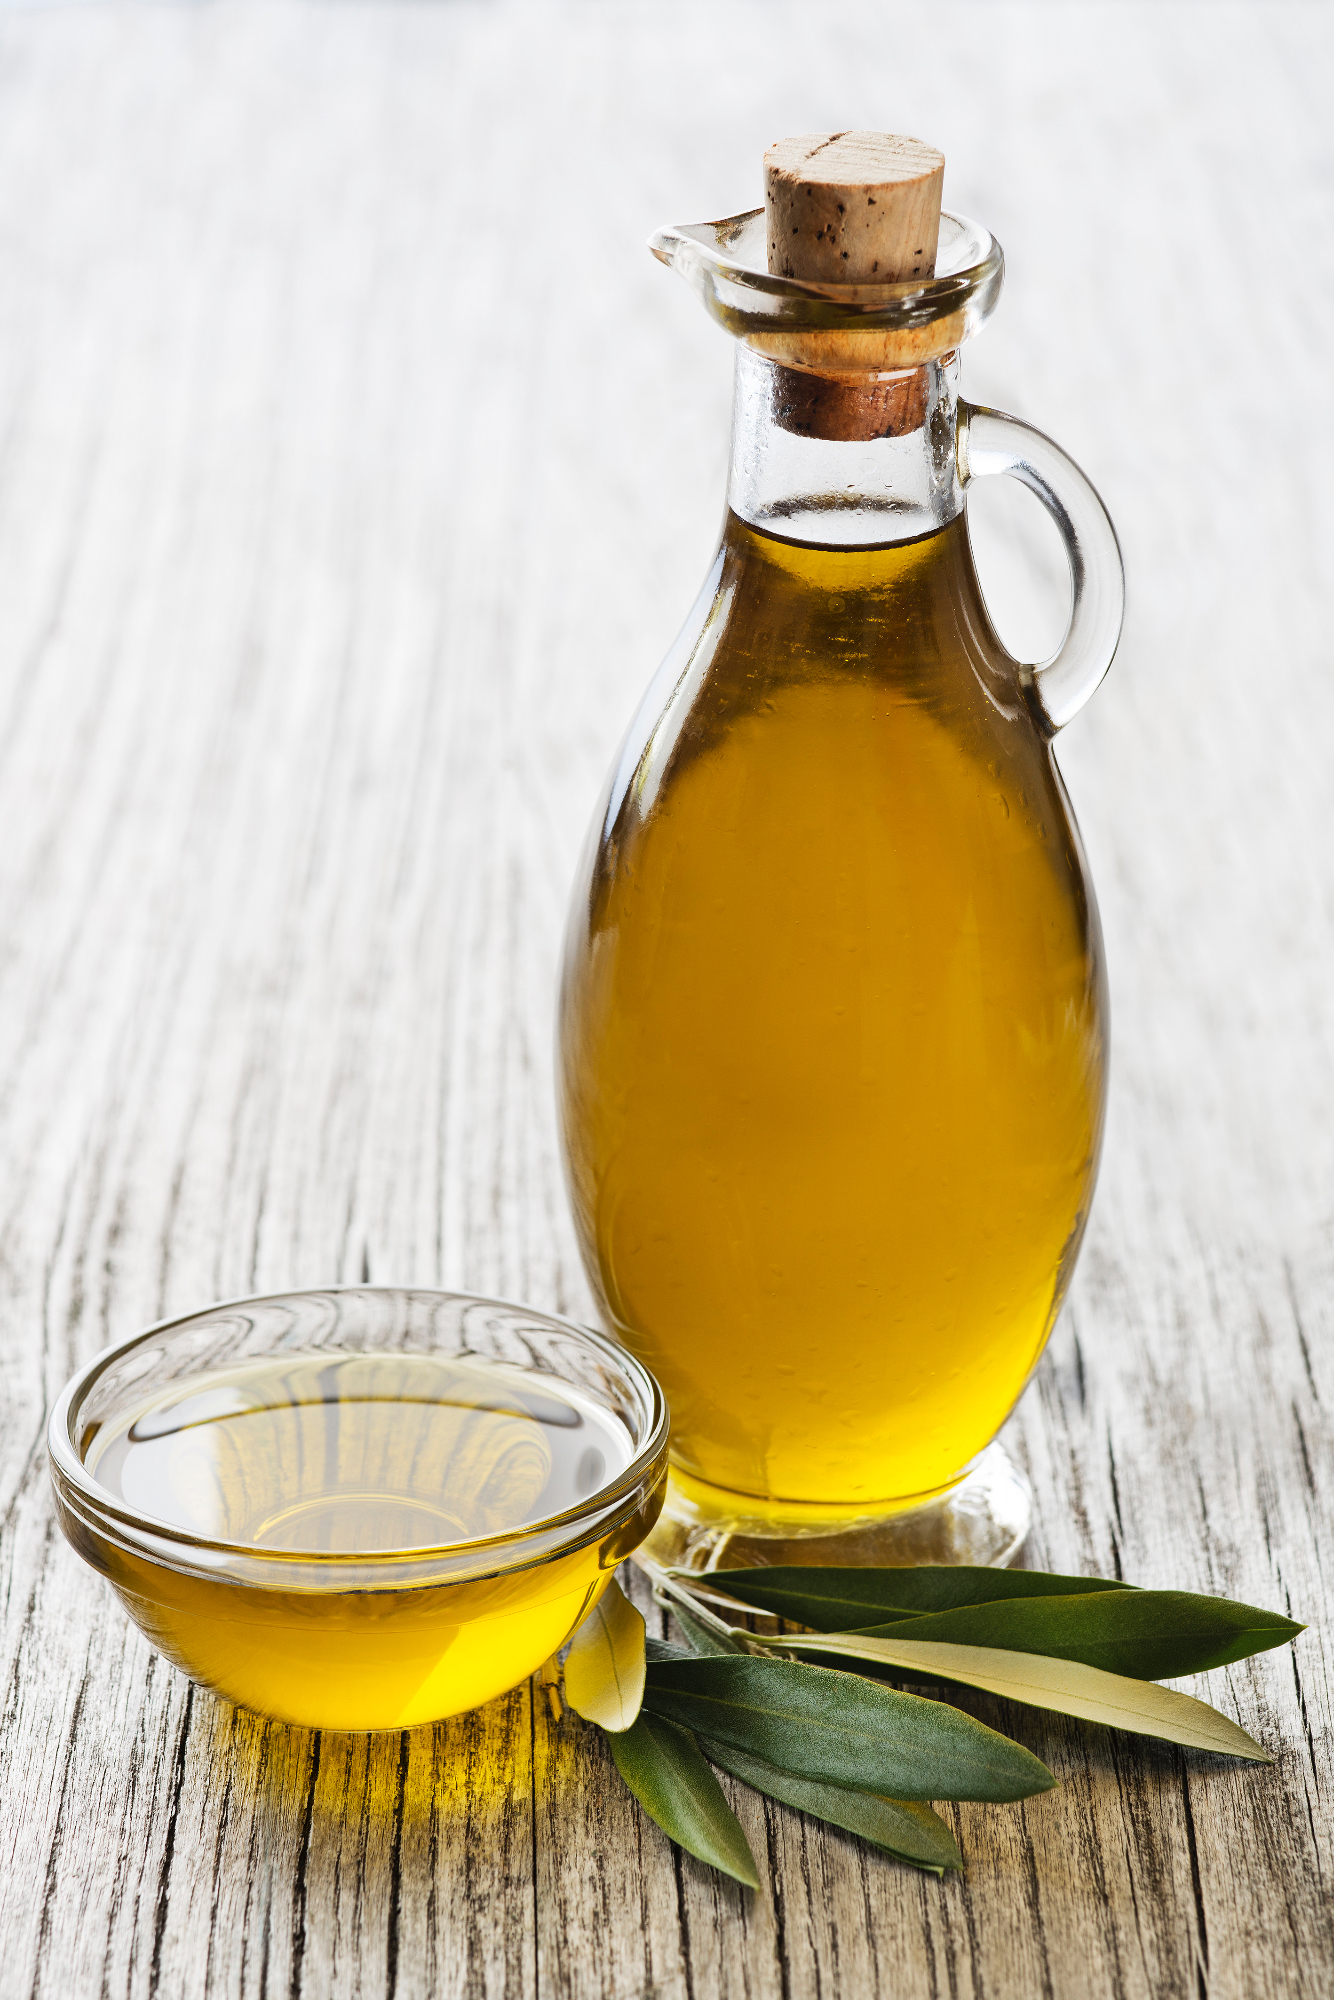 Ekstra deviško oljčno olje slovenske Istre je zelo kvalitetno olje